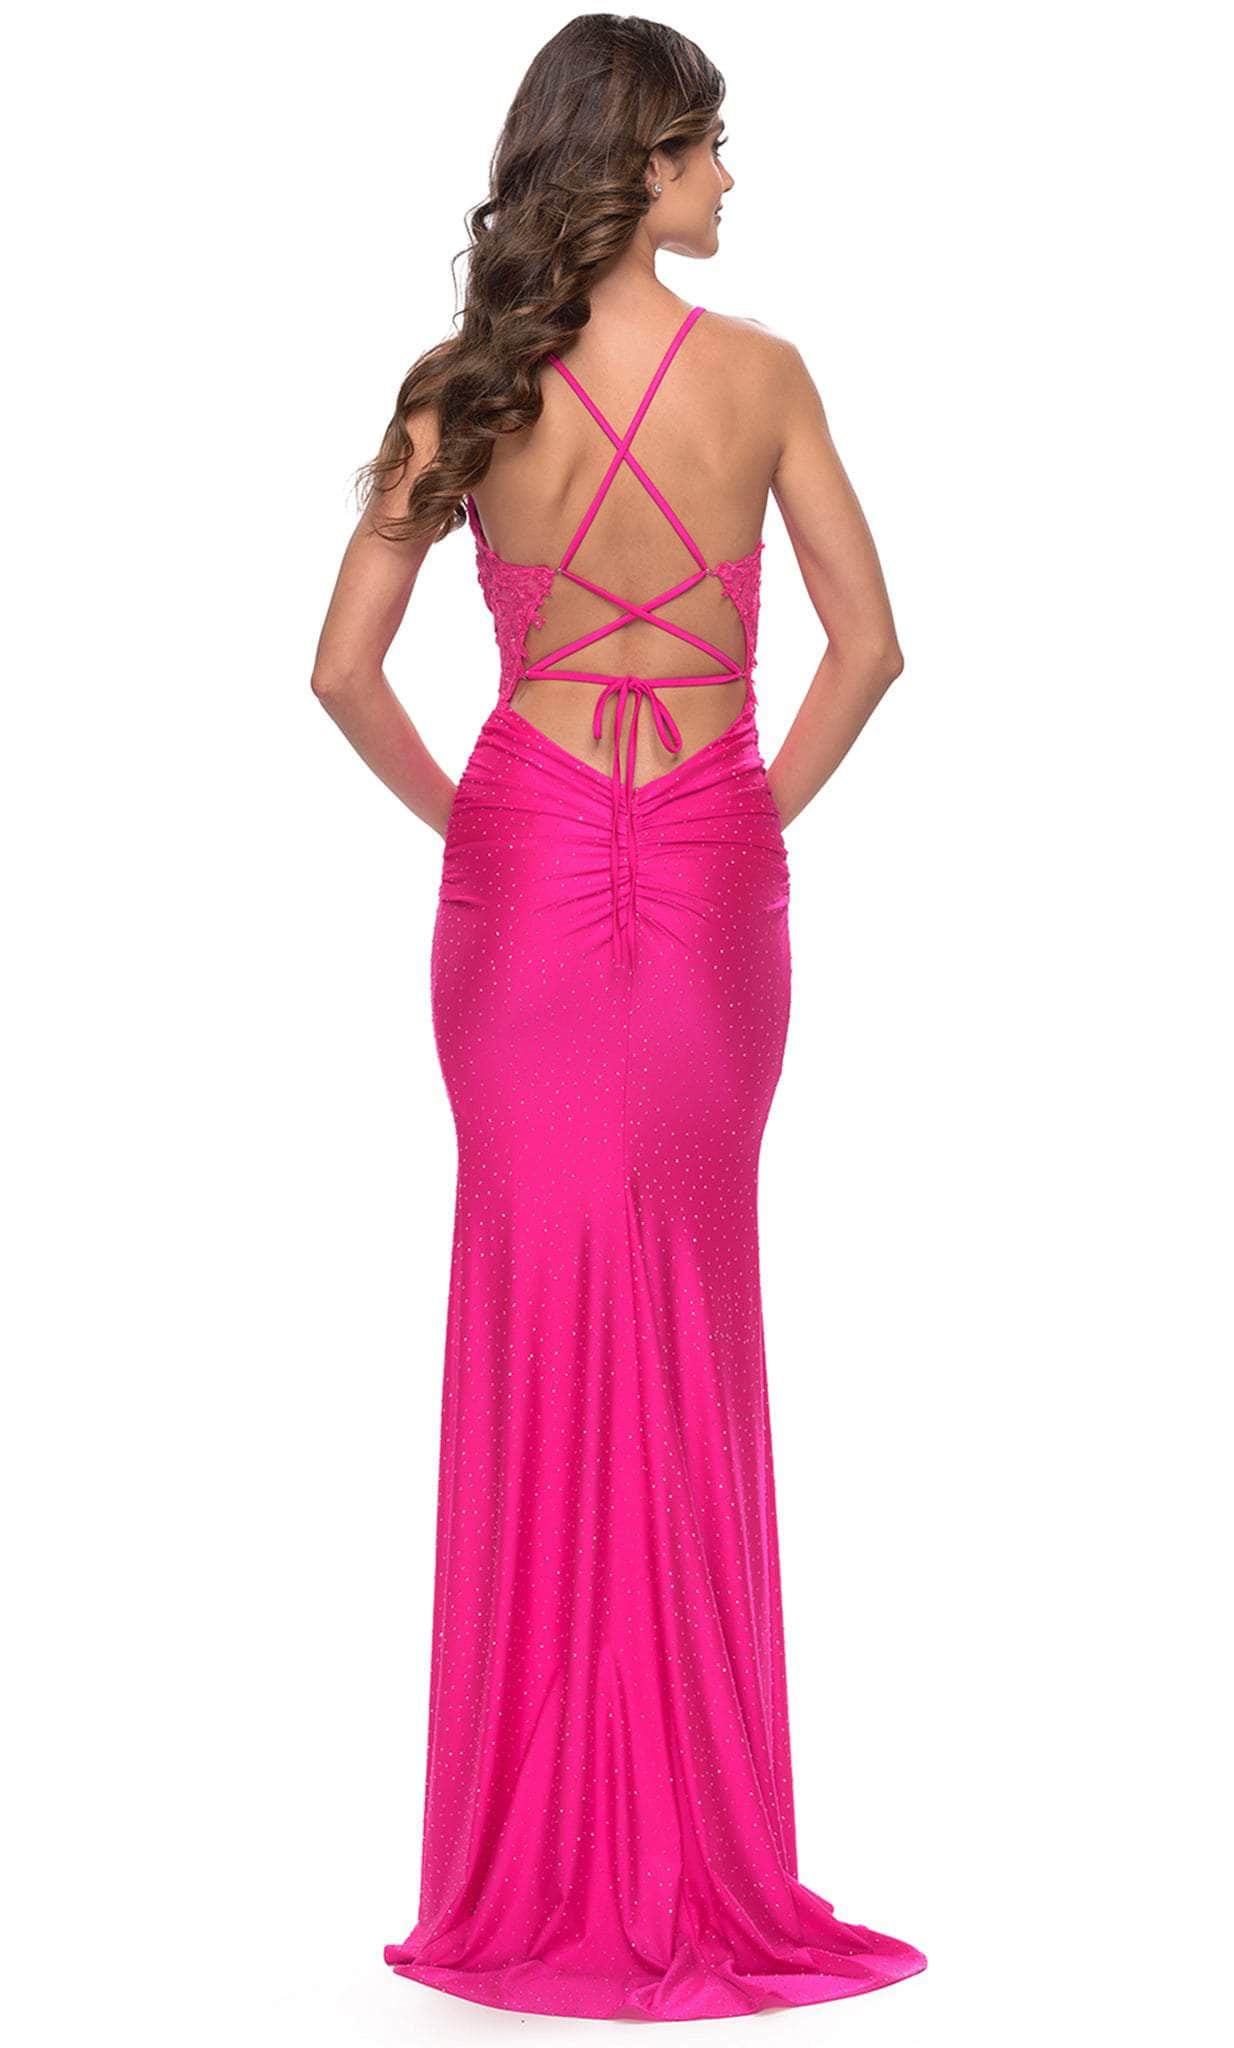 La Femme 31365 - Drape Front Dress